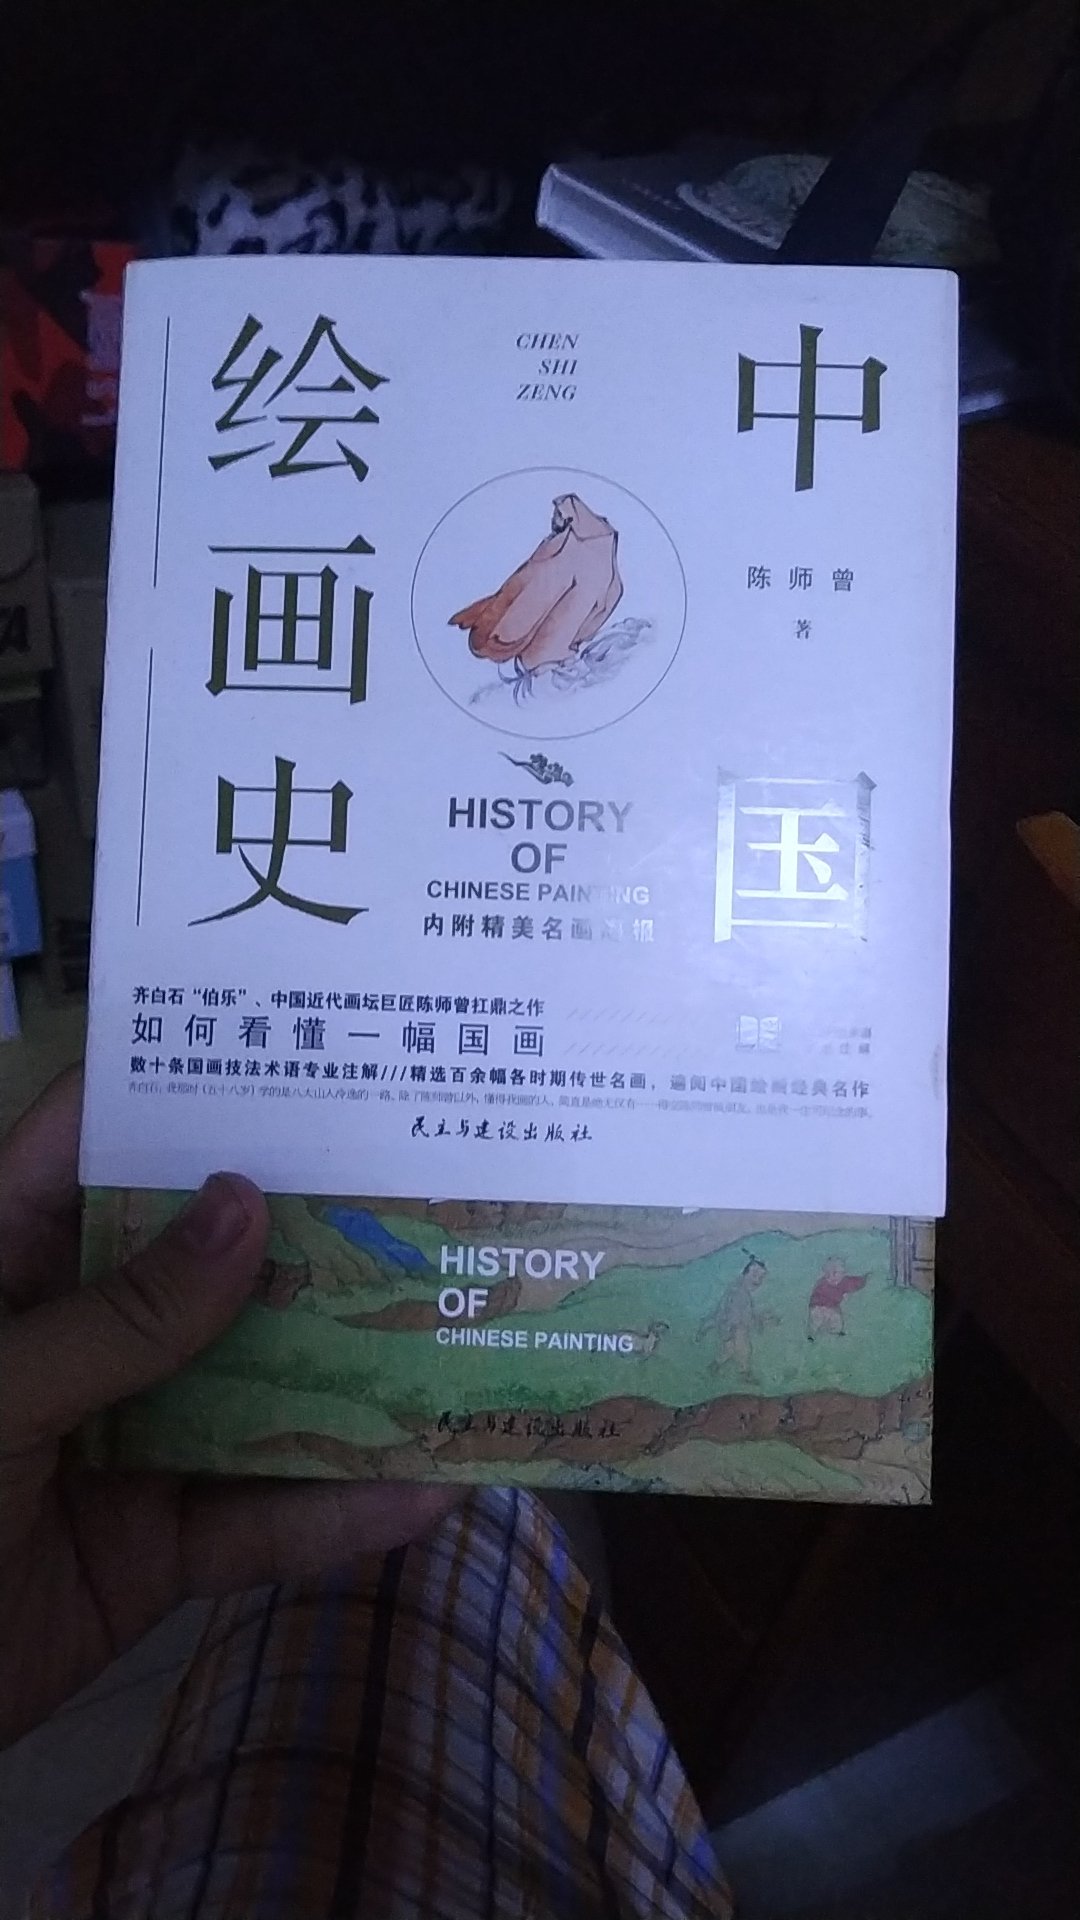 好喜欢这本书，中国绘画史，可以一览中华绘画艺术的发展史，美不胜收。。